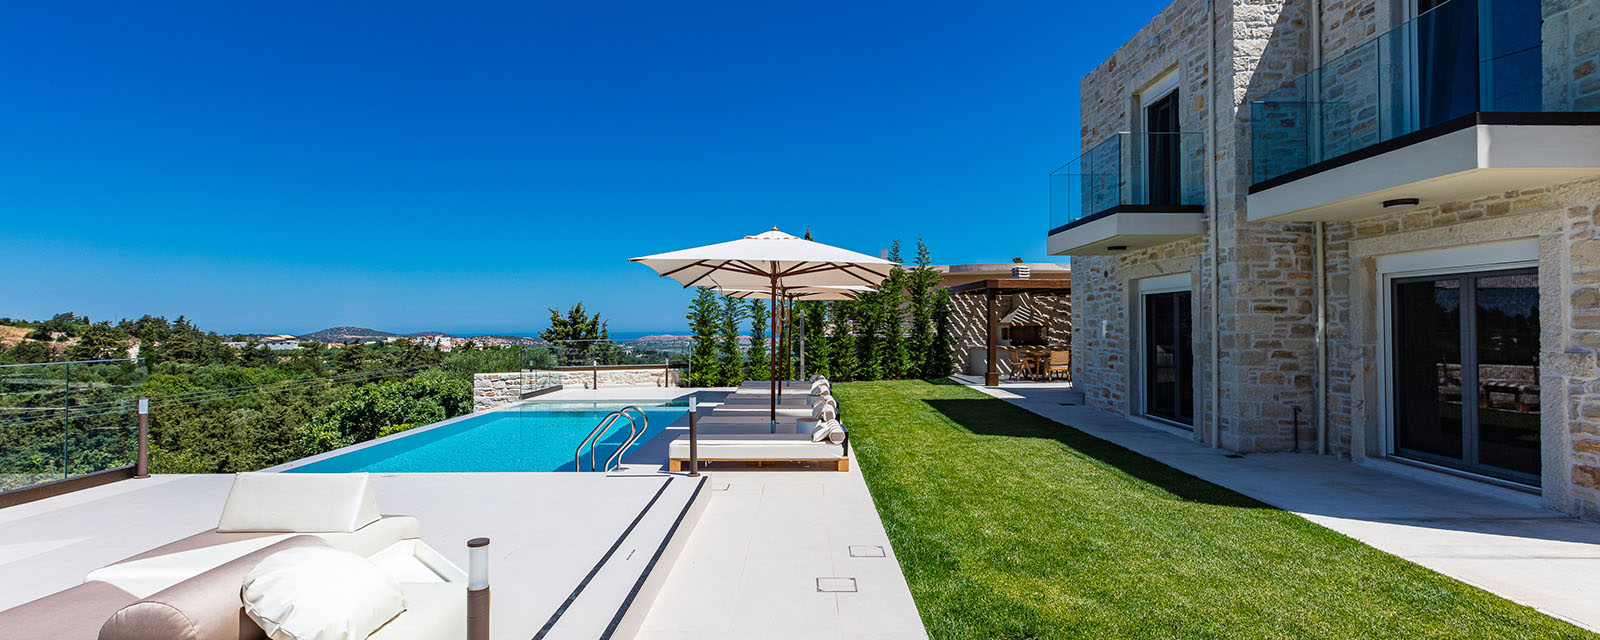 Ferienhaus Auf Kreta Mieten Margarites Villa 1